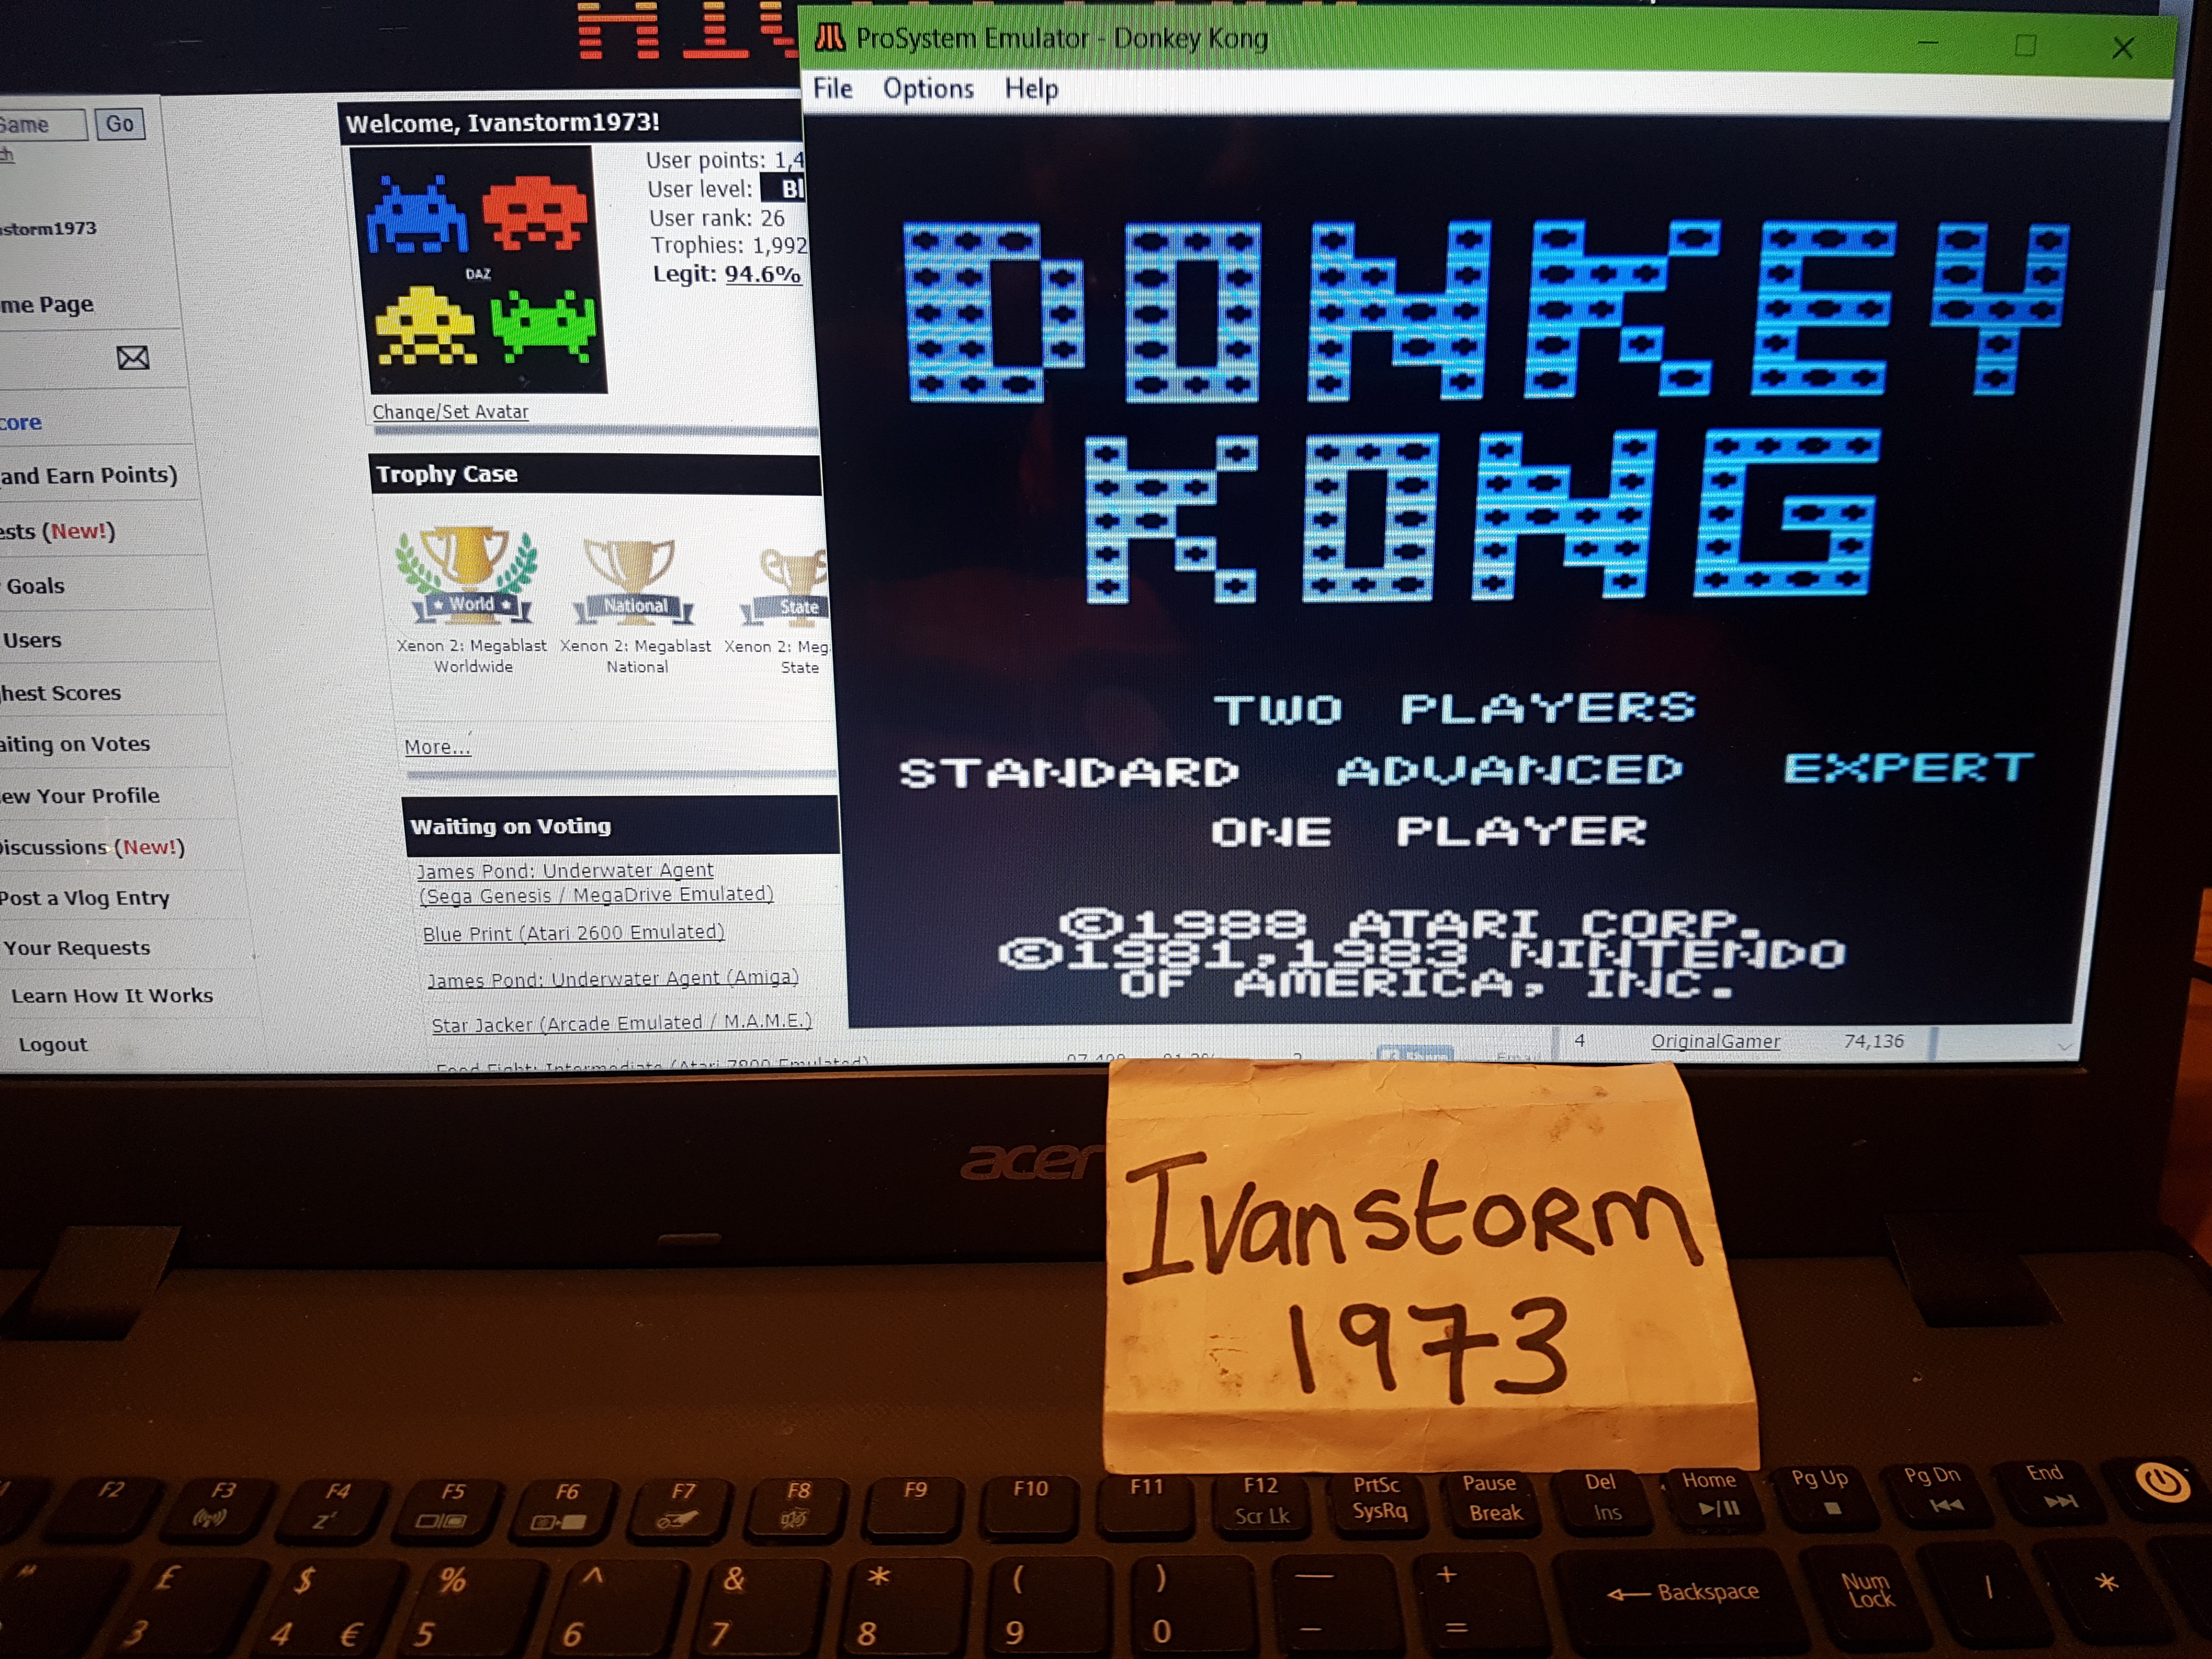 Donkey Kong: Standard 70,000 points